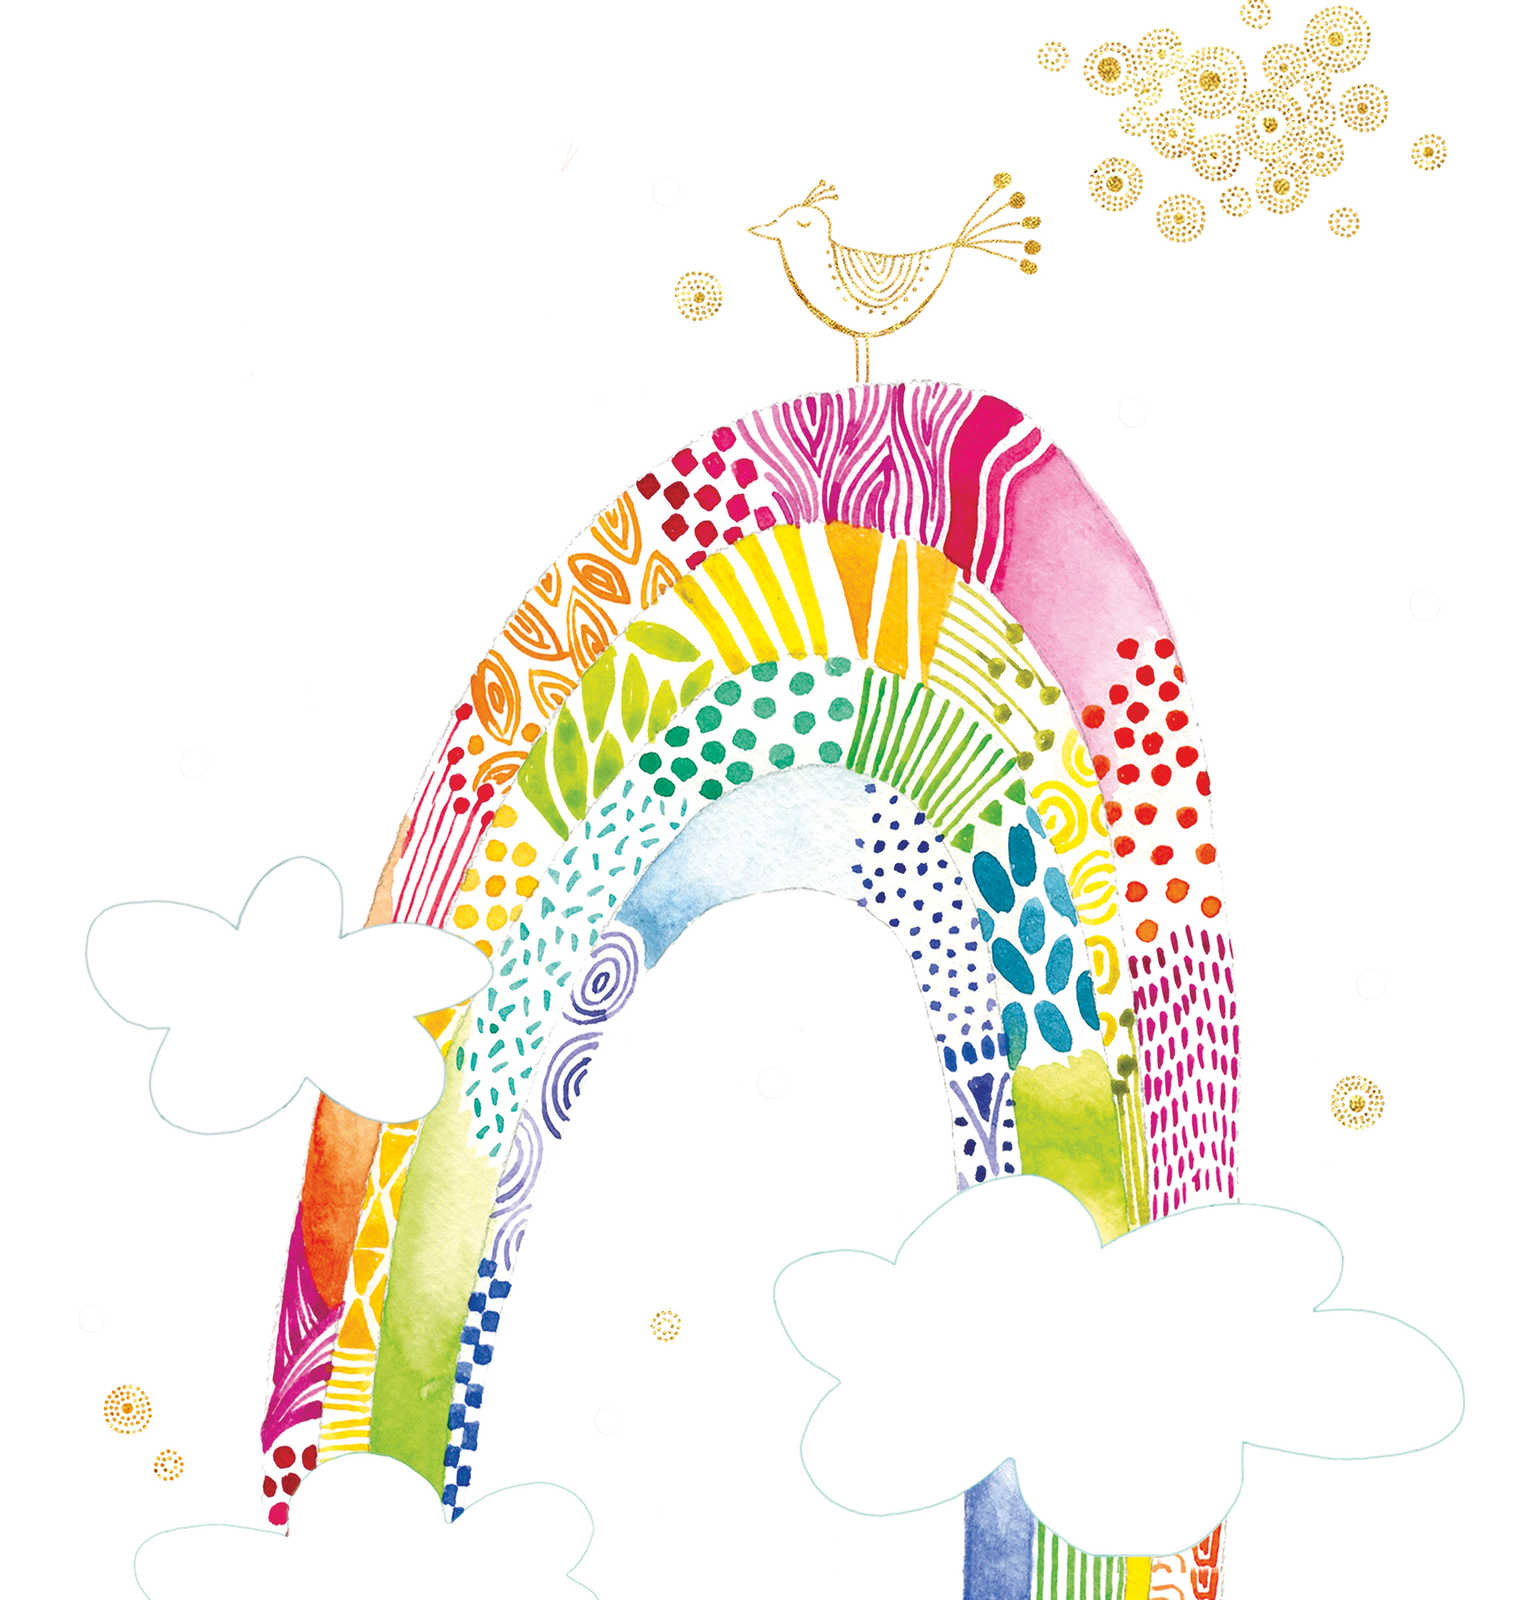             Kindermotiv Tapete mit buntem Regenbogen und Vogel – Bunt, Weiß, Pink
        